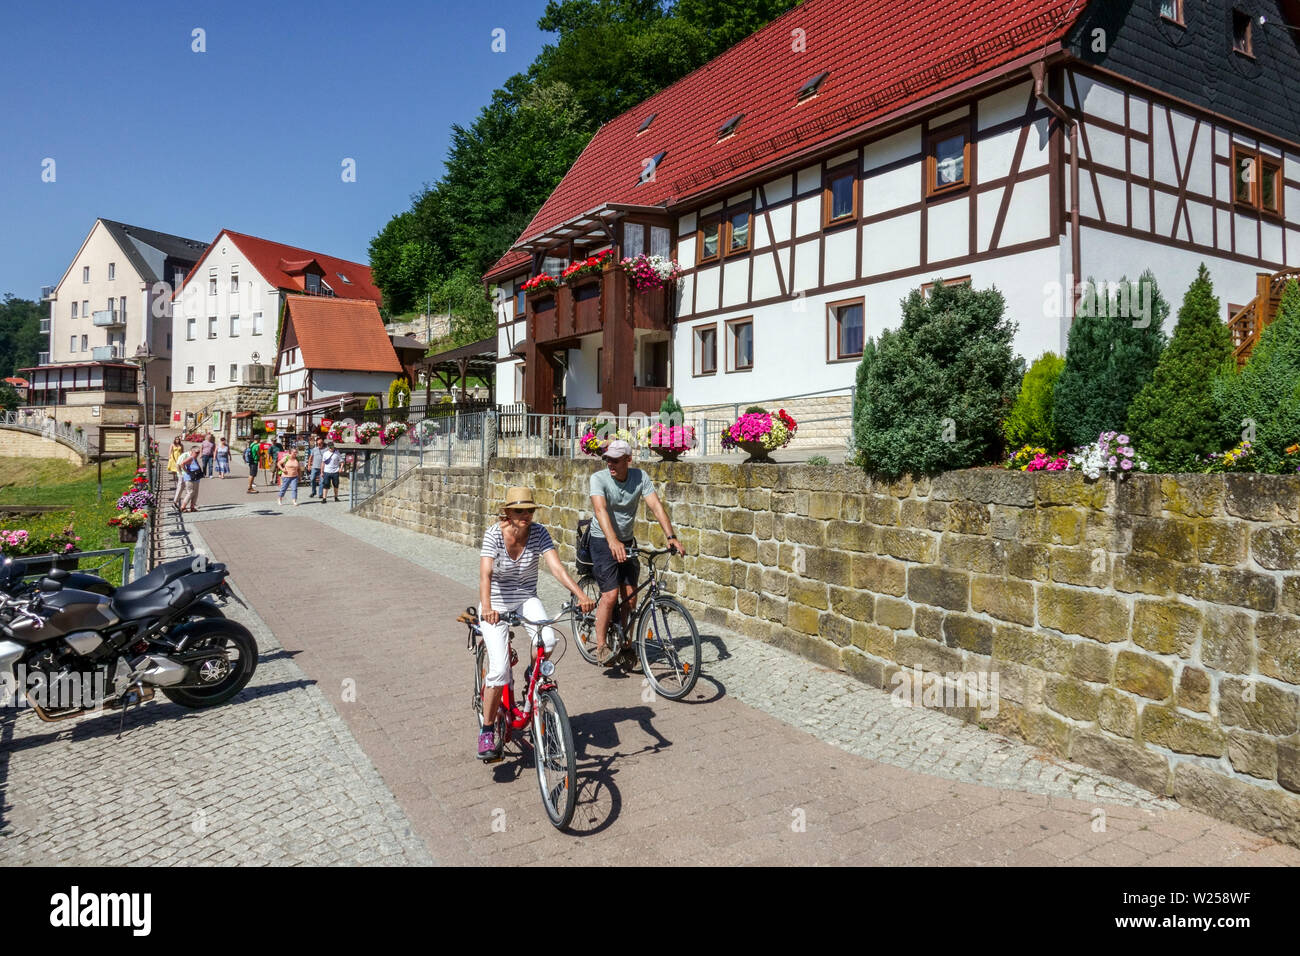 Touristes sur les vélos Kurort Rathen maisons à colombages Suisse saxonne Allemagne cyclisme Elbe Vallée bâtiments personnes vélo vélos couple motards Banque D'Images